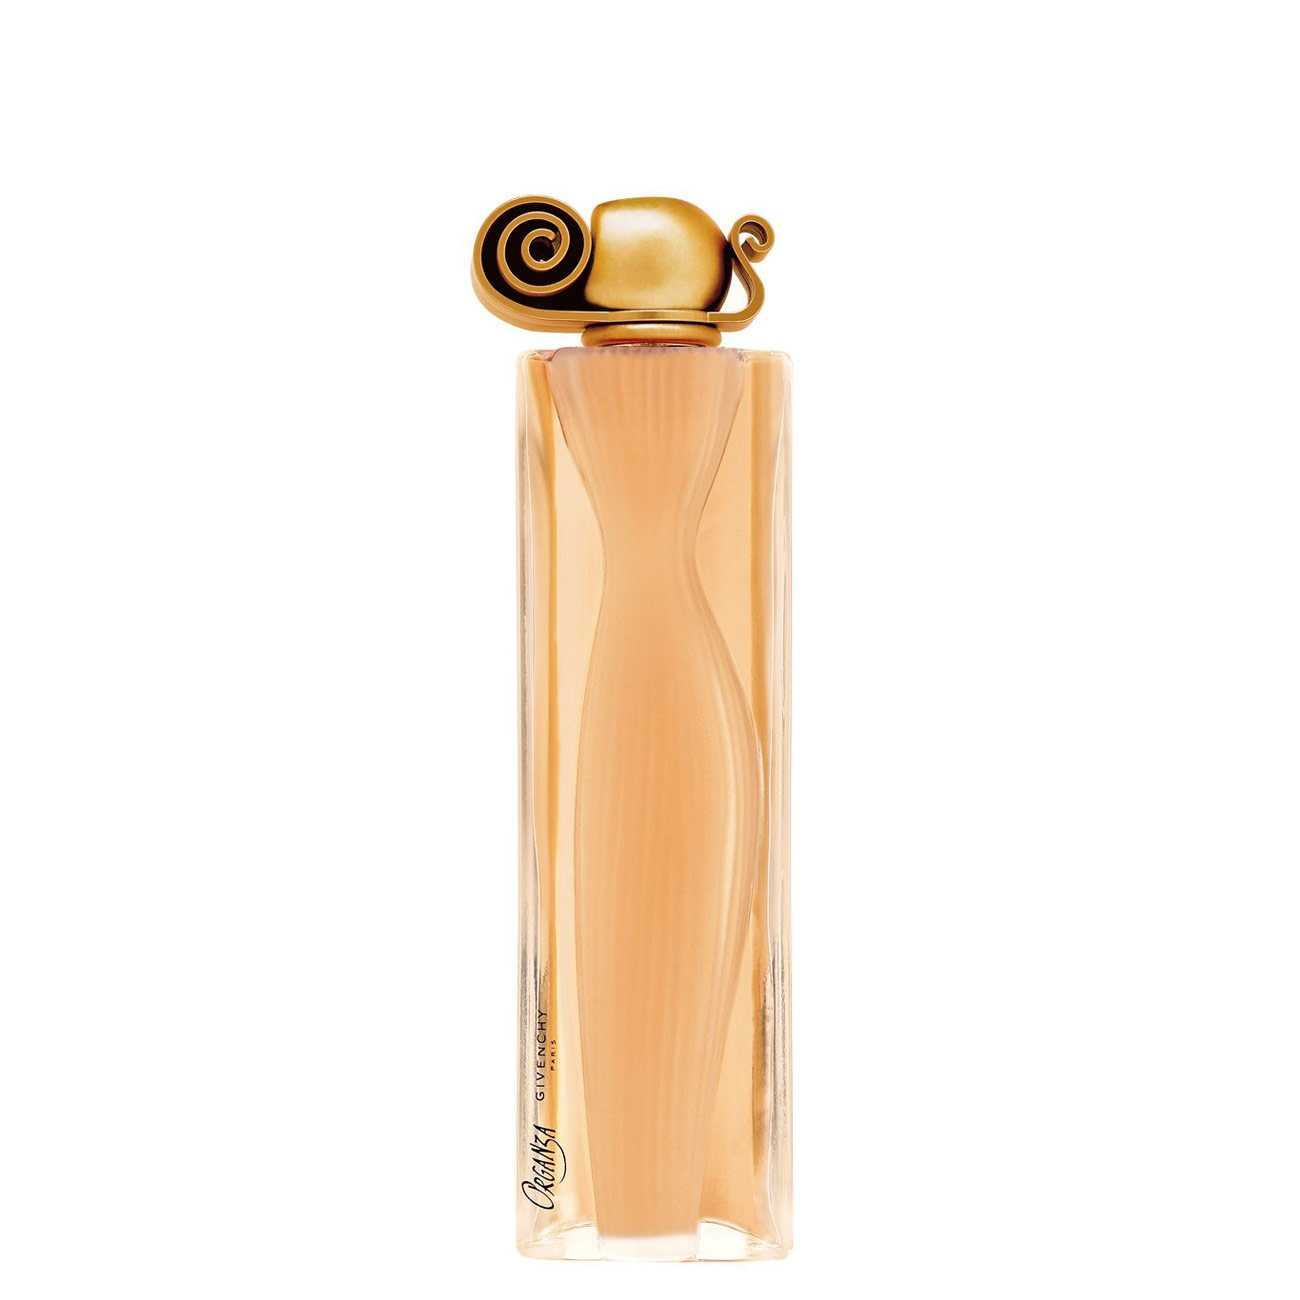 Apa de Parfum Givenchy ORGANZA 100ml cu comanda online